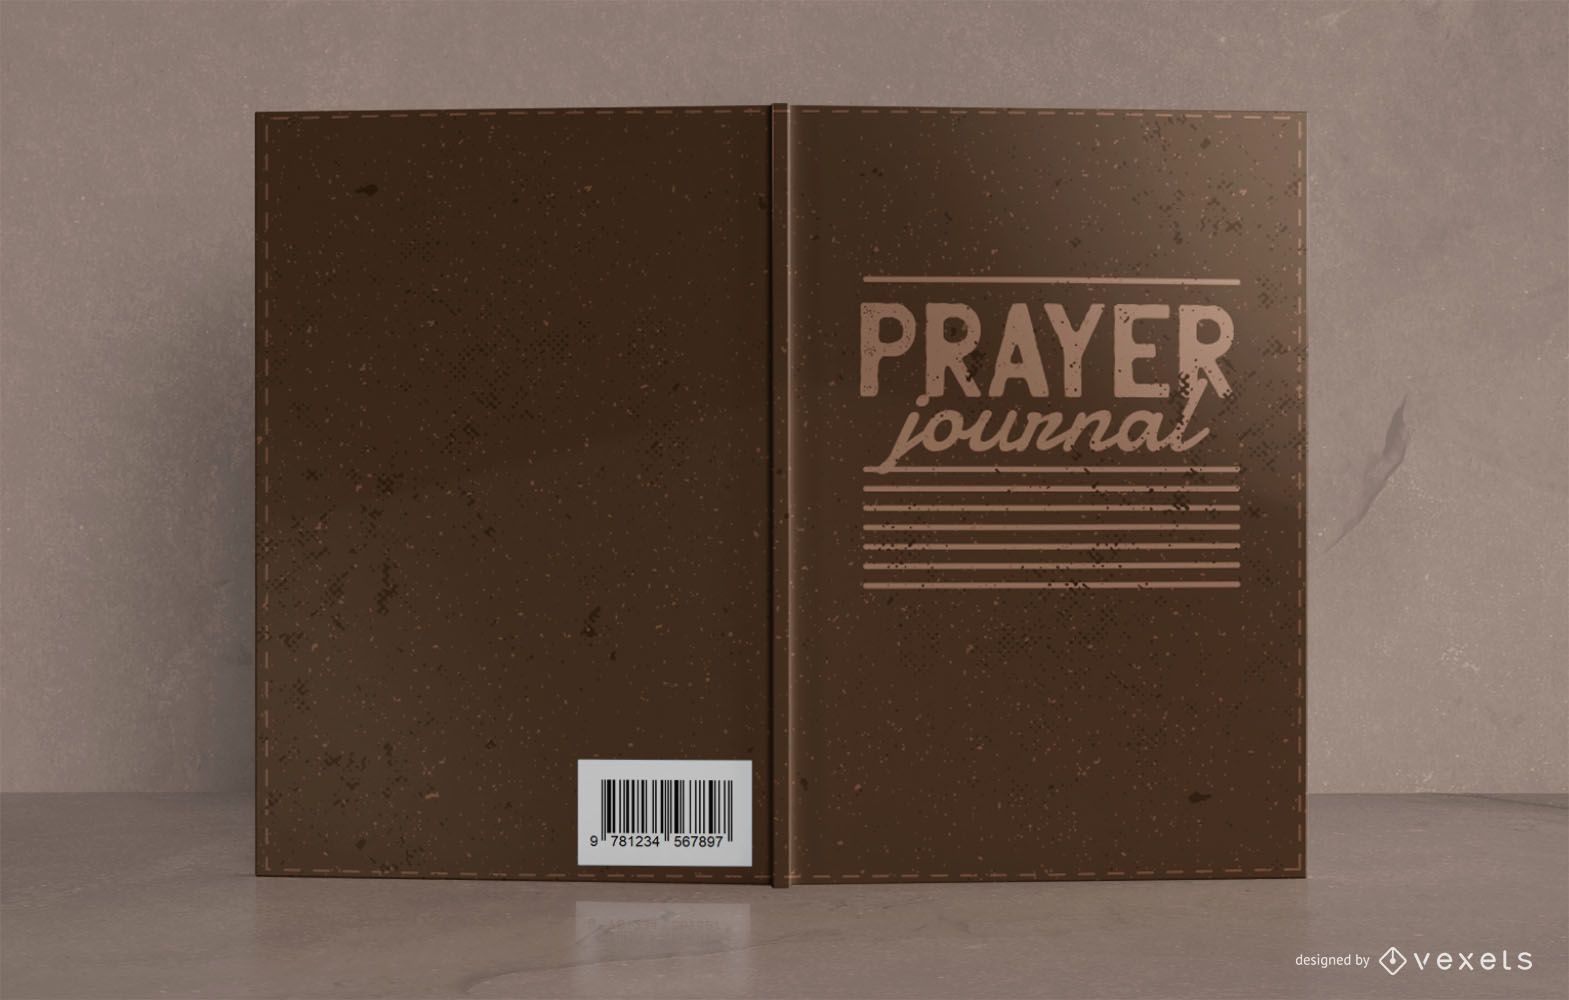 Design f?r Gebetsjournal-Bucheinband im Lederstil